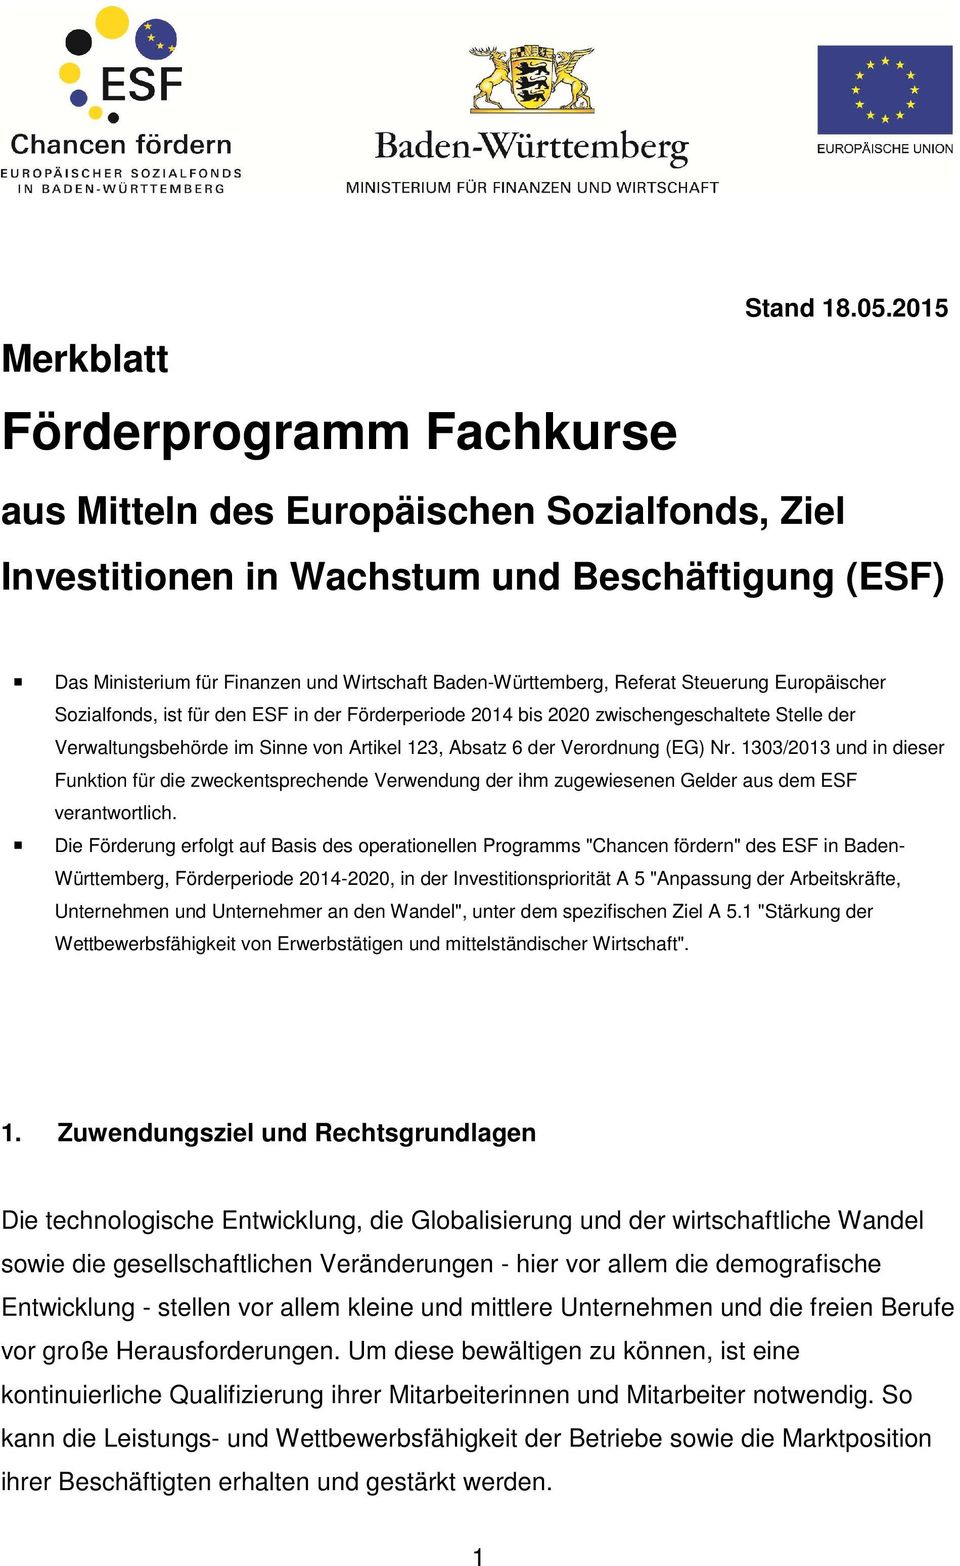 Sozialfonds, ist für den ESF in der Förderperiode 2014 bis 2020 zwischengeschaltete Stelle der Verwaltungsbehörde im Sinne von Artikel 123, Absatz 6 der Verordnung (EG) Nr.